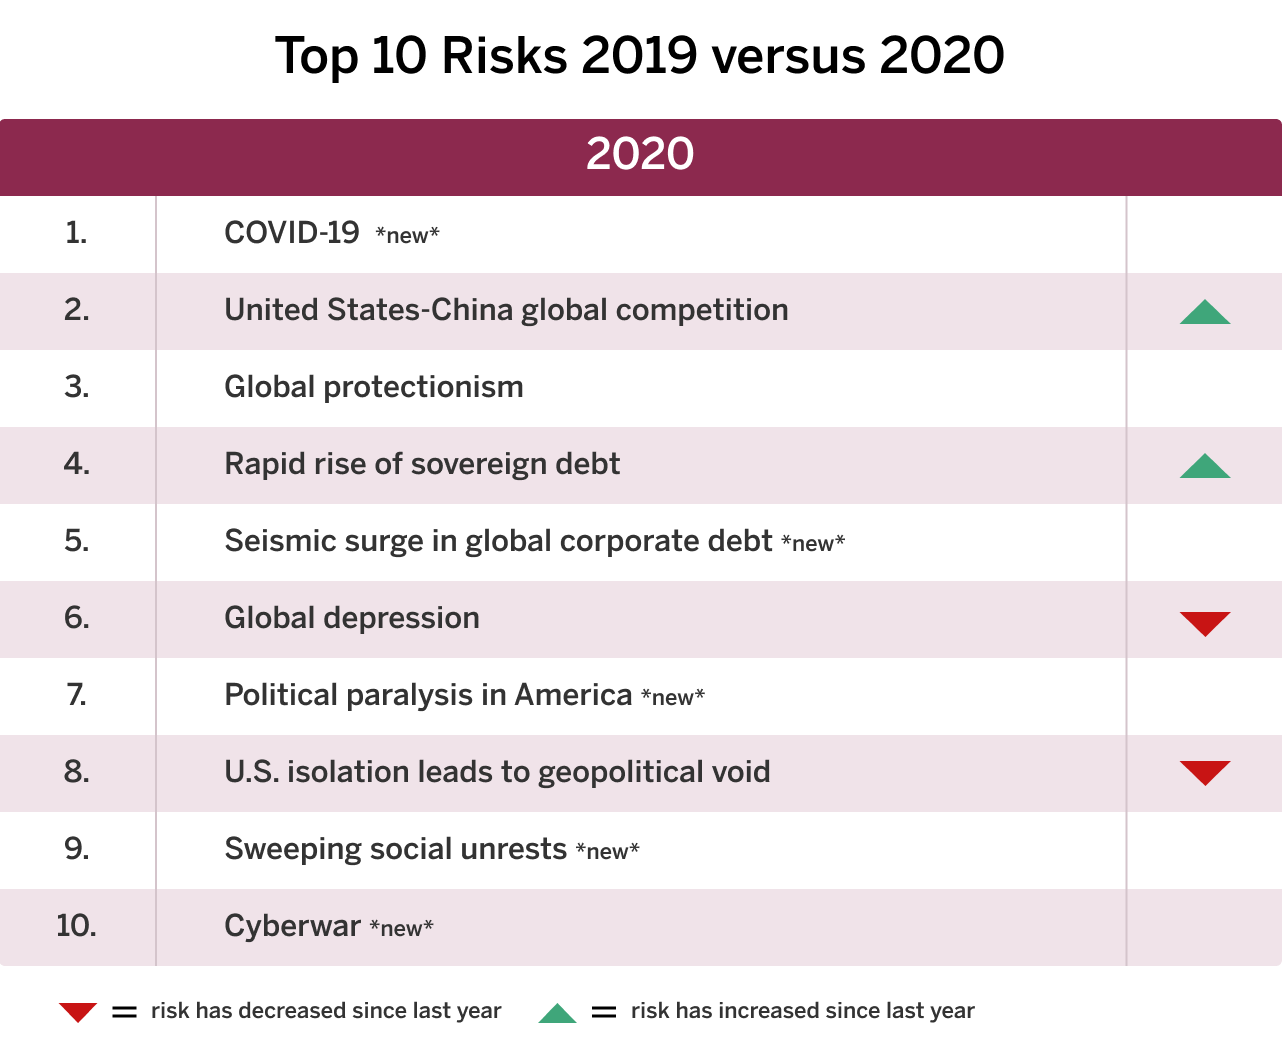 Top Risks 2019 vs 2020